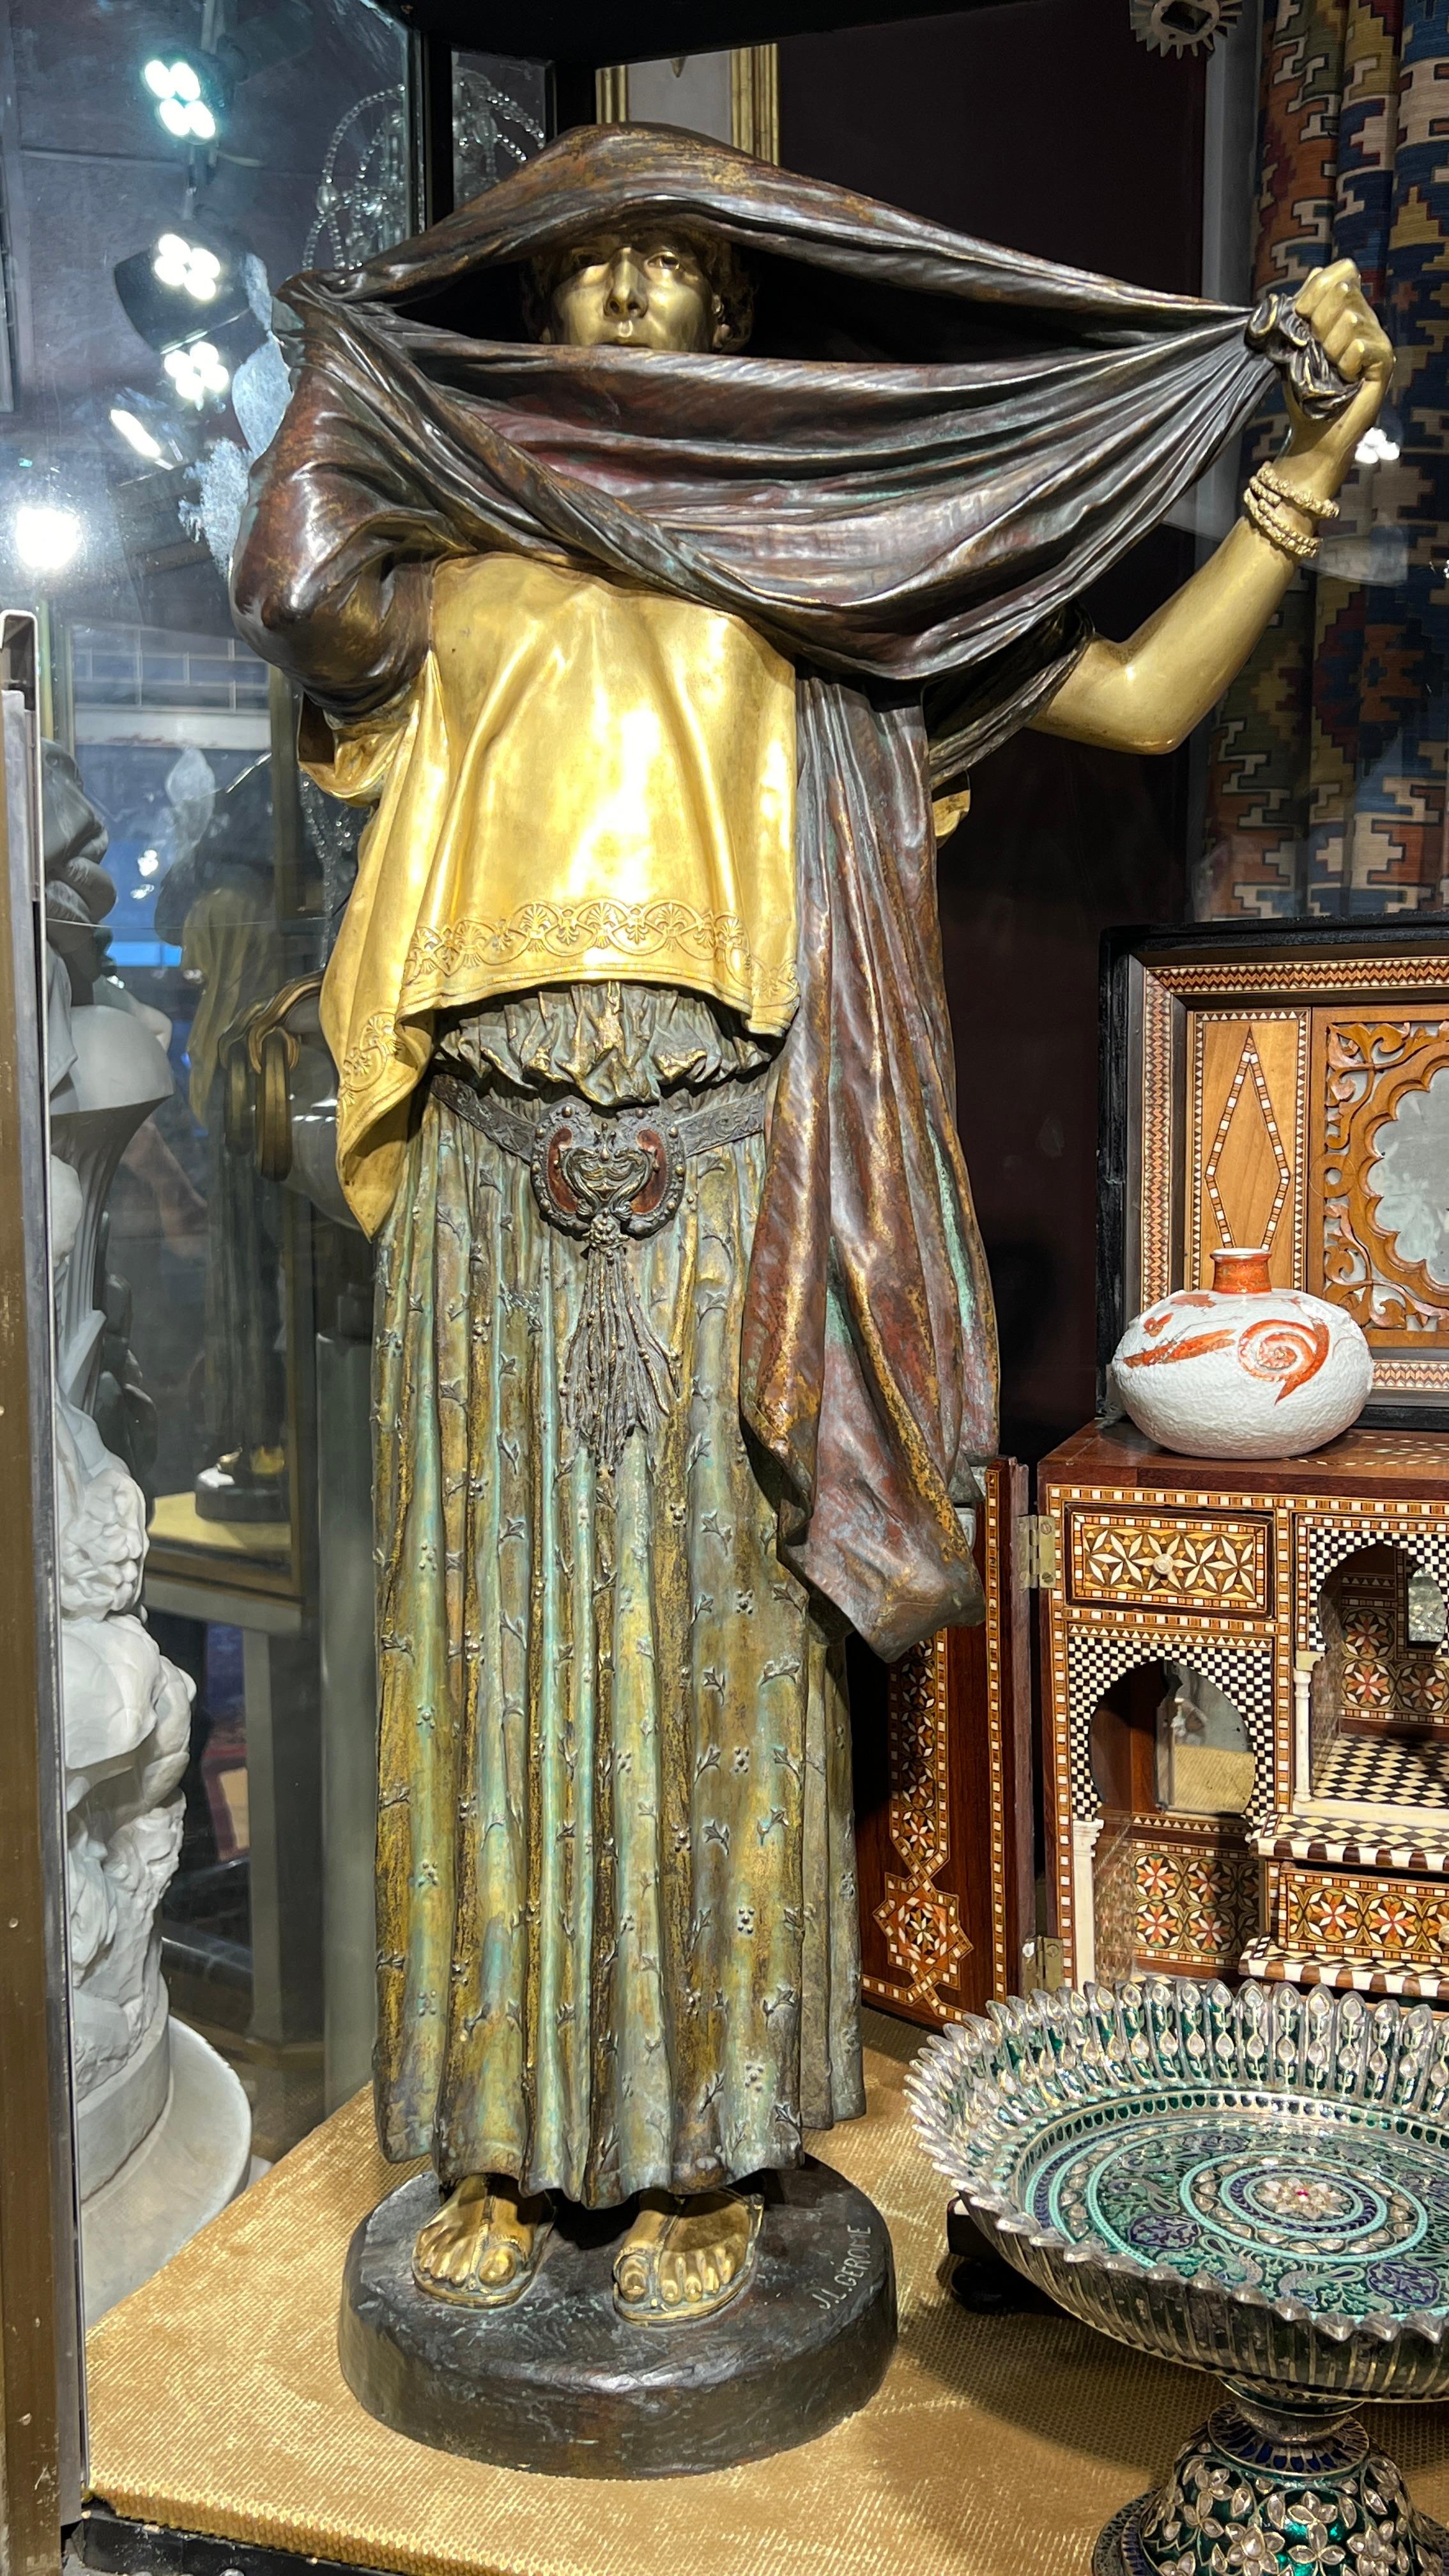 Unsere Bronzestatue La Femme au Voile (Frau mit Schleier) wurde von Siot-Decauville aus Paris nach dem Originalmodell von Jean Leon Gerome (1824-1904) gegossen.  Mit einer Höhe von 85,7 cm (33 3/4 Zoll), feiner Patina und teilweise vergoldeten